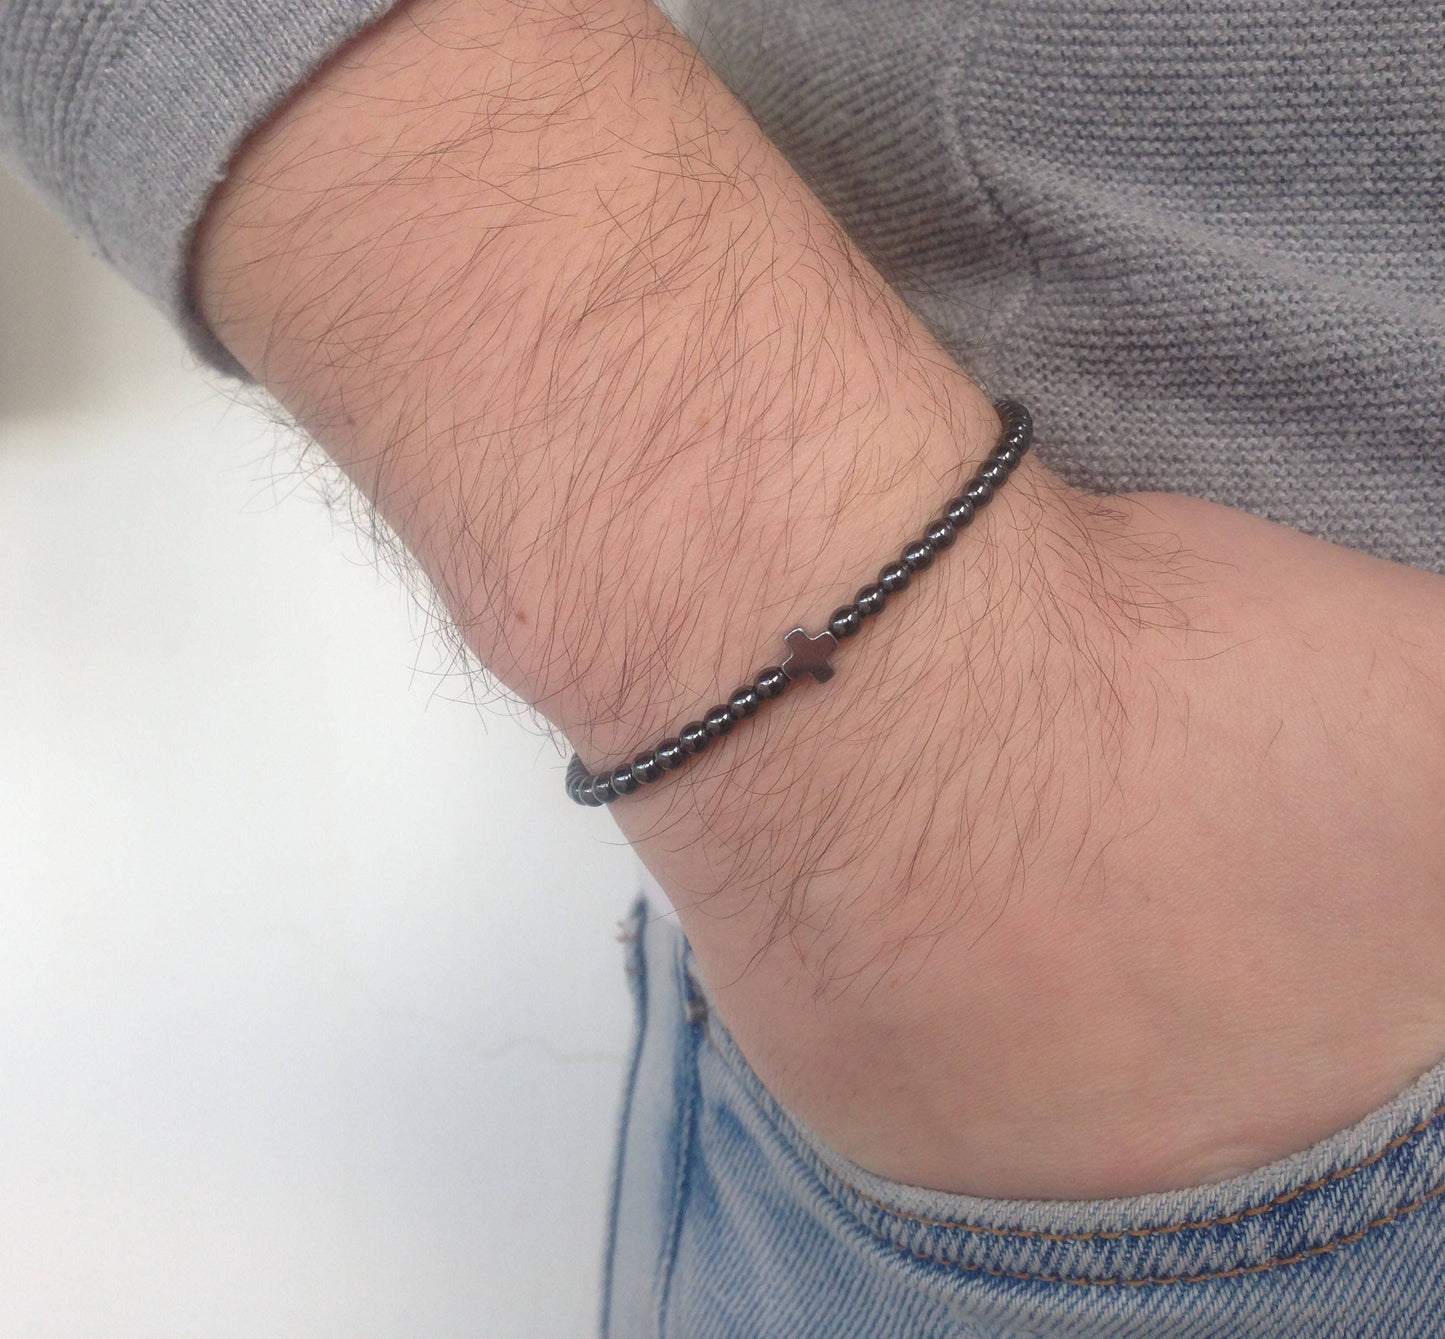 Hematite cross stainless steel bracelet